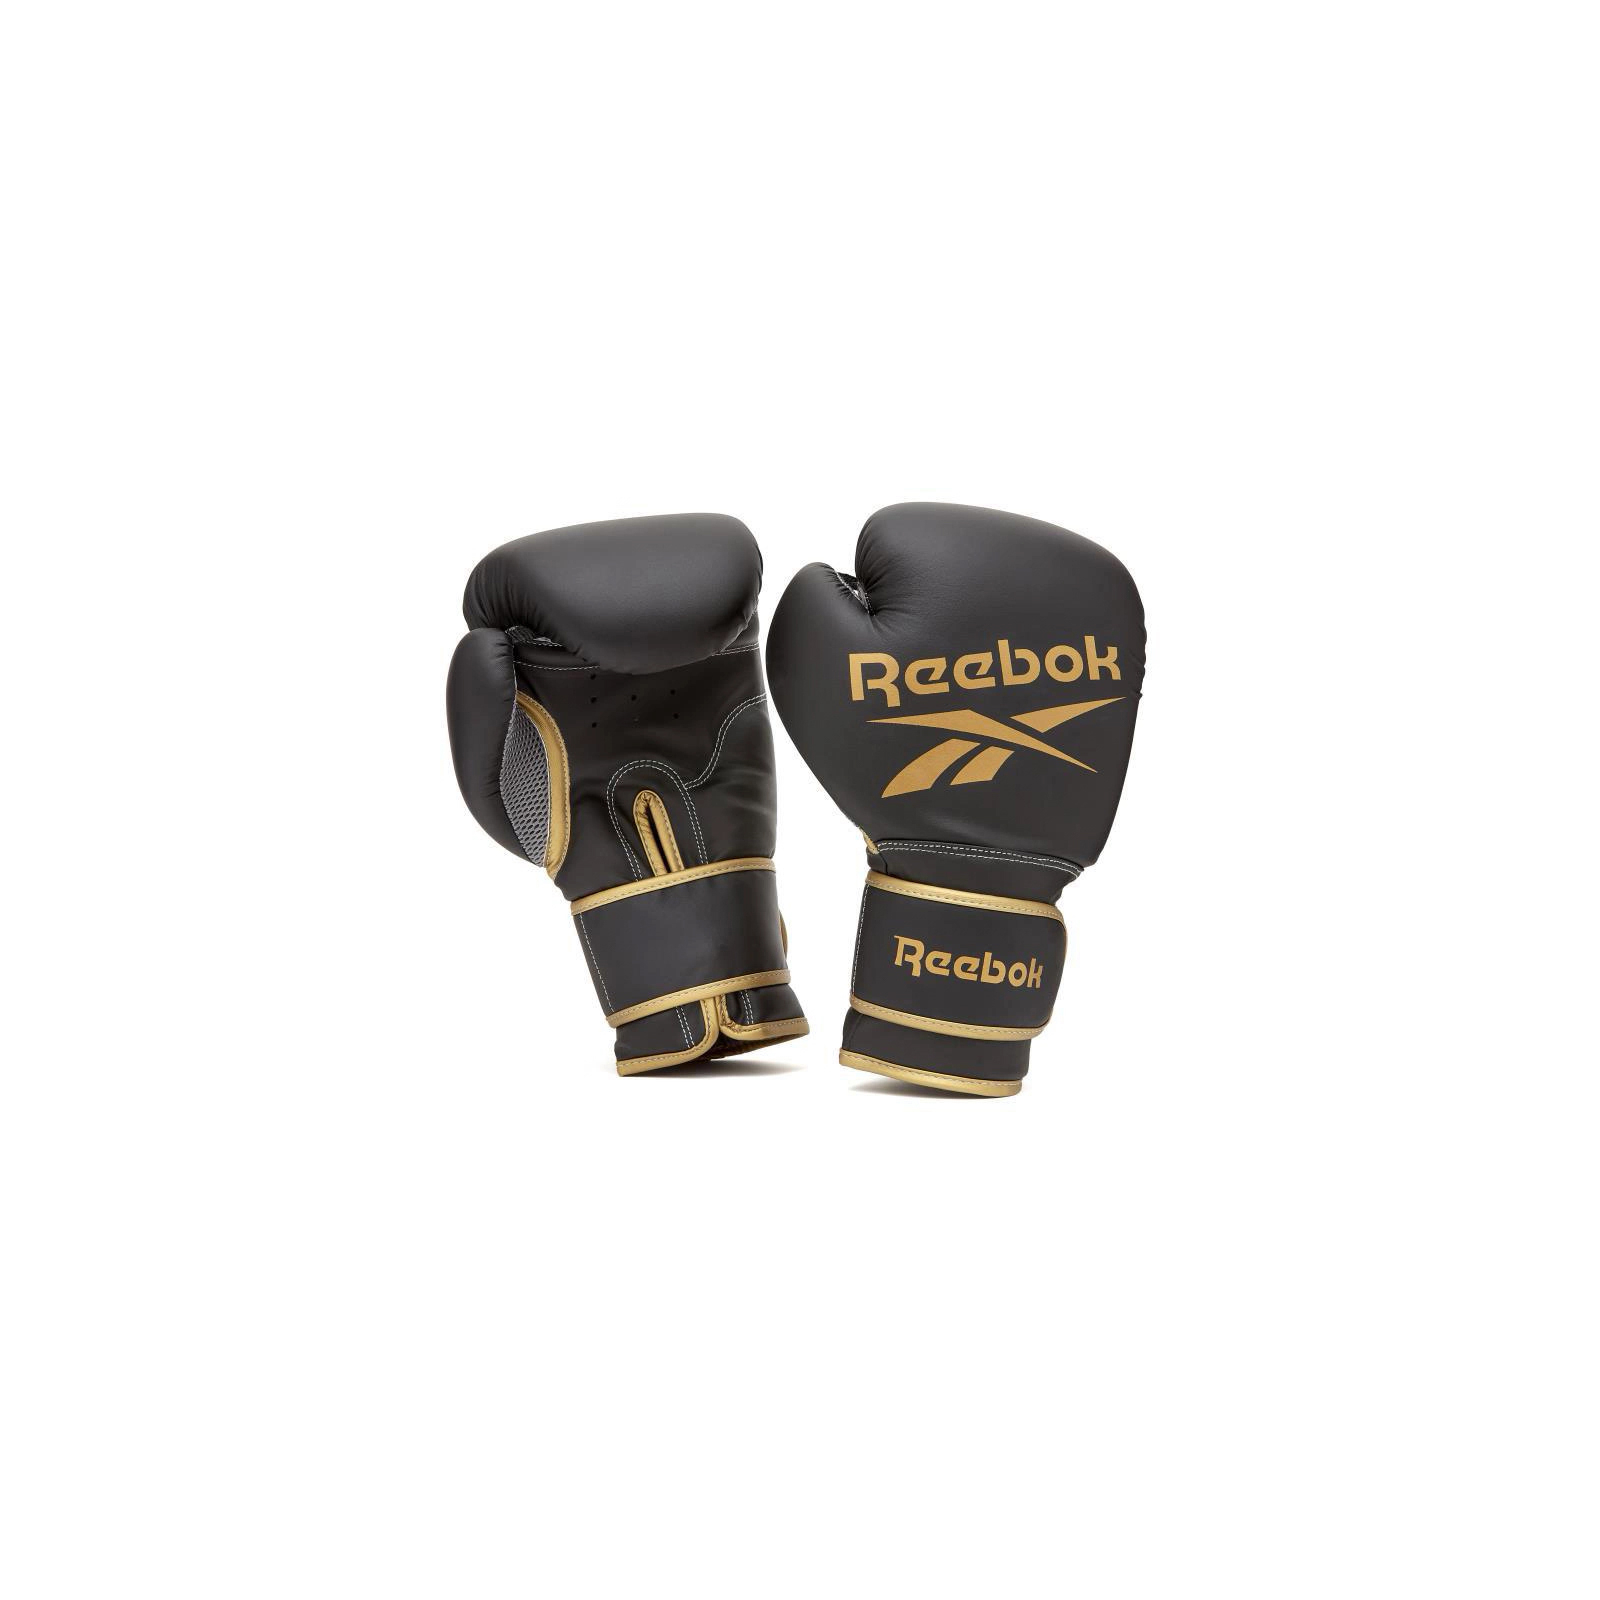 Боксерські рукавички Reebok Boxing Gloves чорний, золото RSCB-12010GB 10 унцій (885652021173)